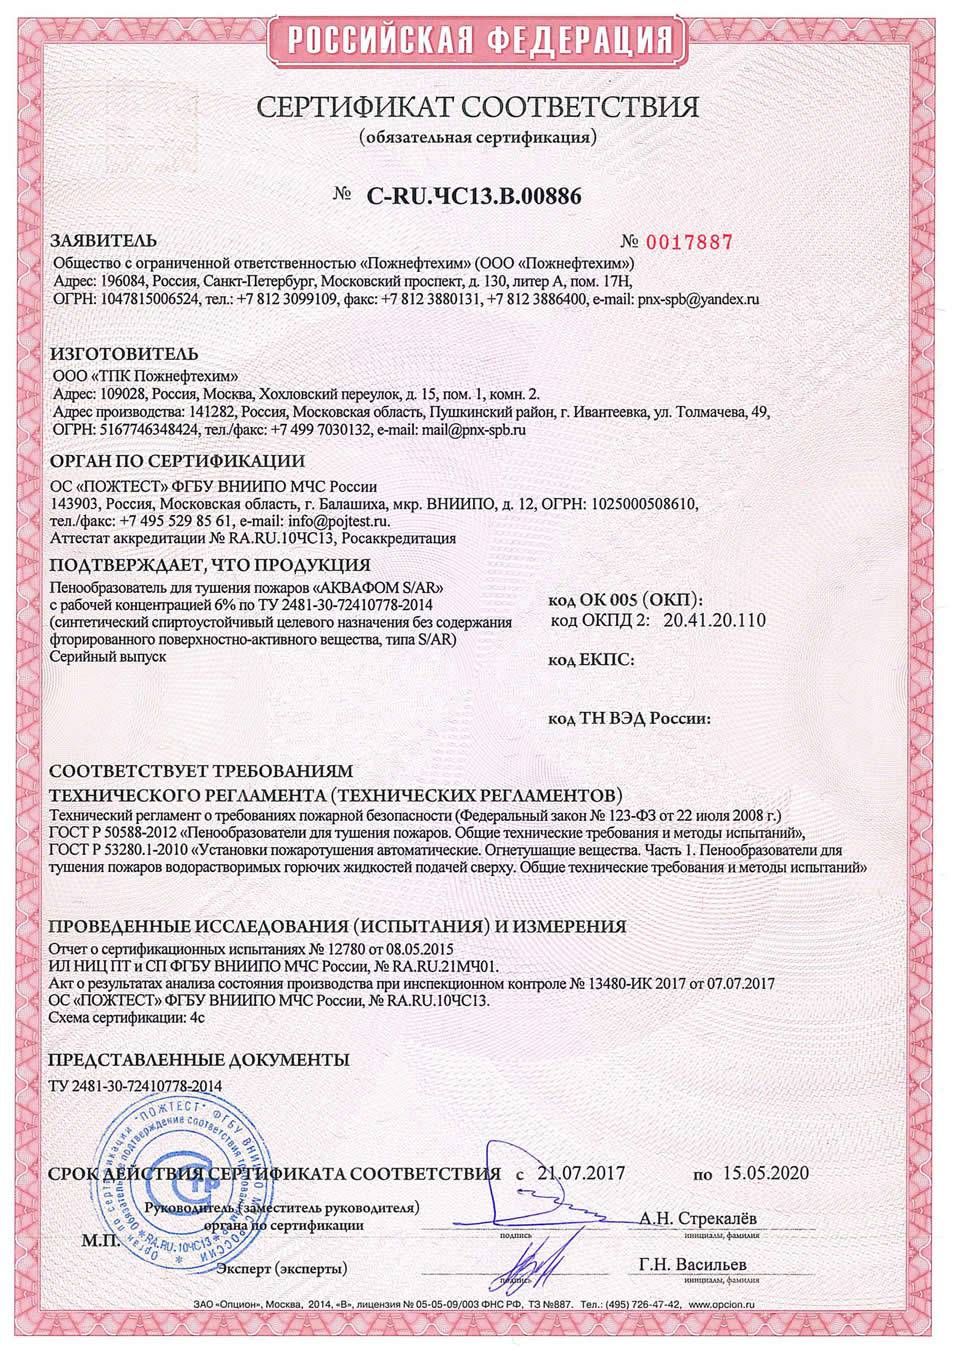 сертификат соответствия ВНИИПО МЧС РФ на синтетический спиртоустойчивый пенообразователь типа S/AR